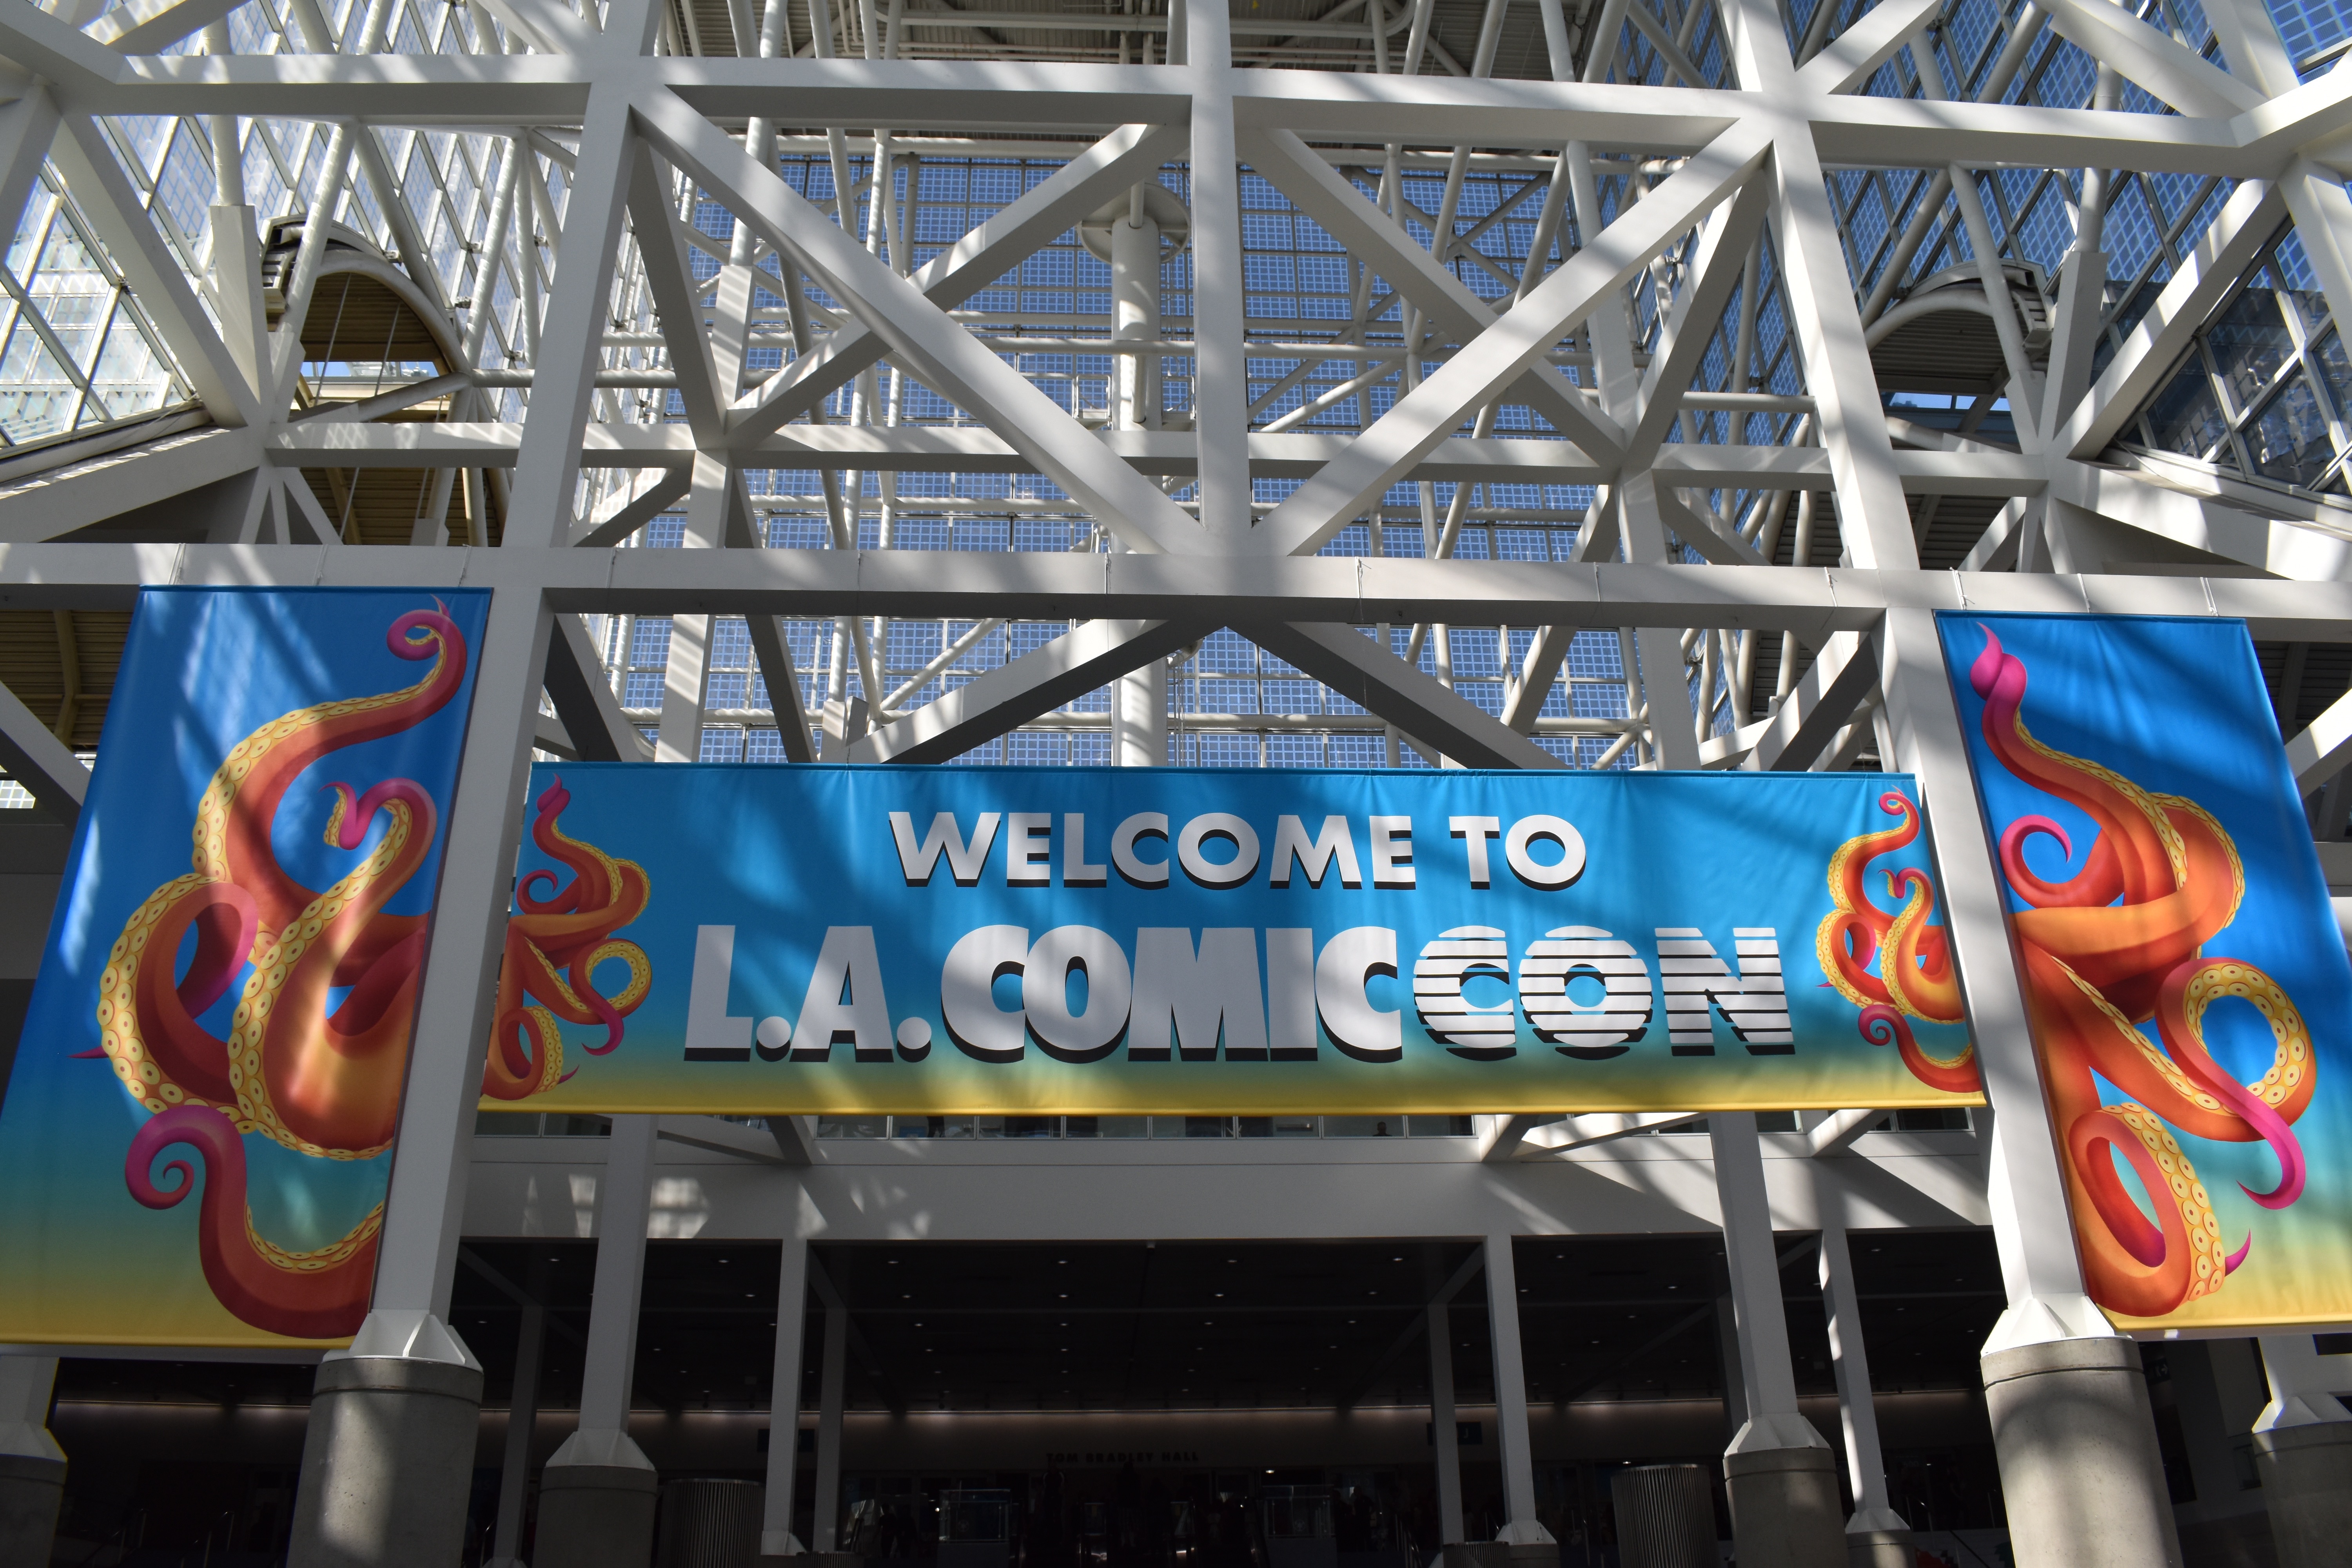 L.A Comic-Con : Review and Comparison